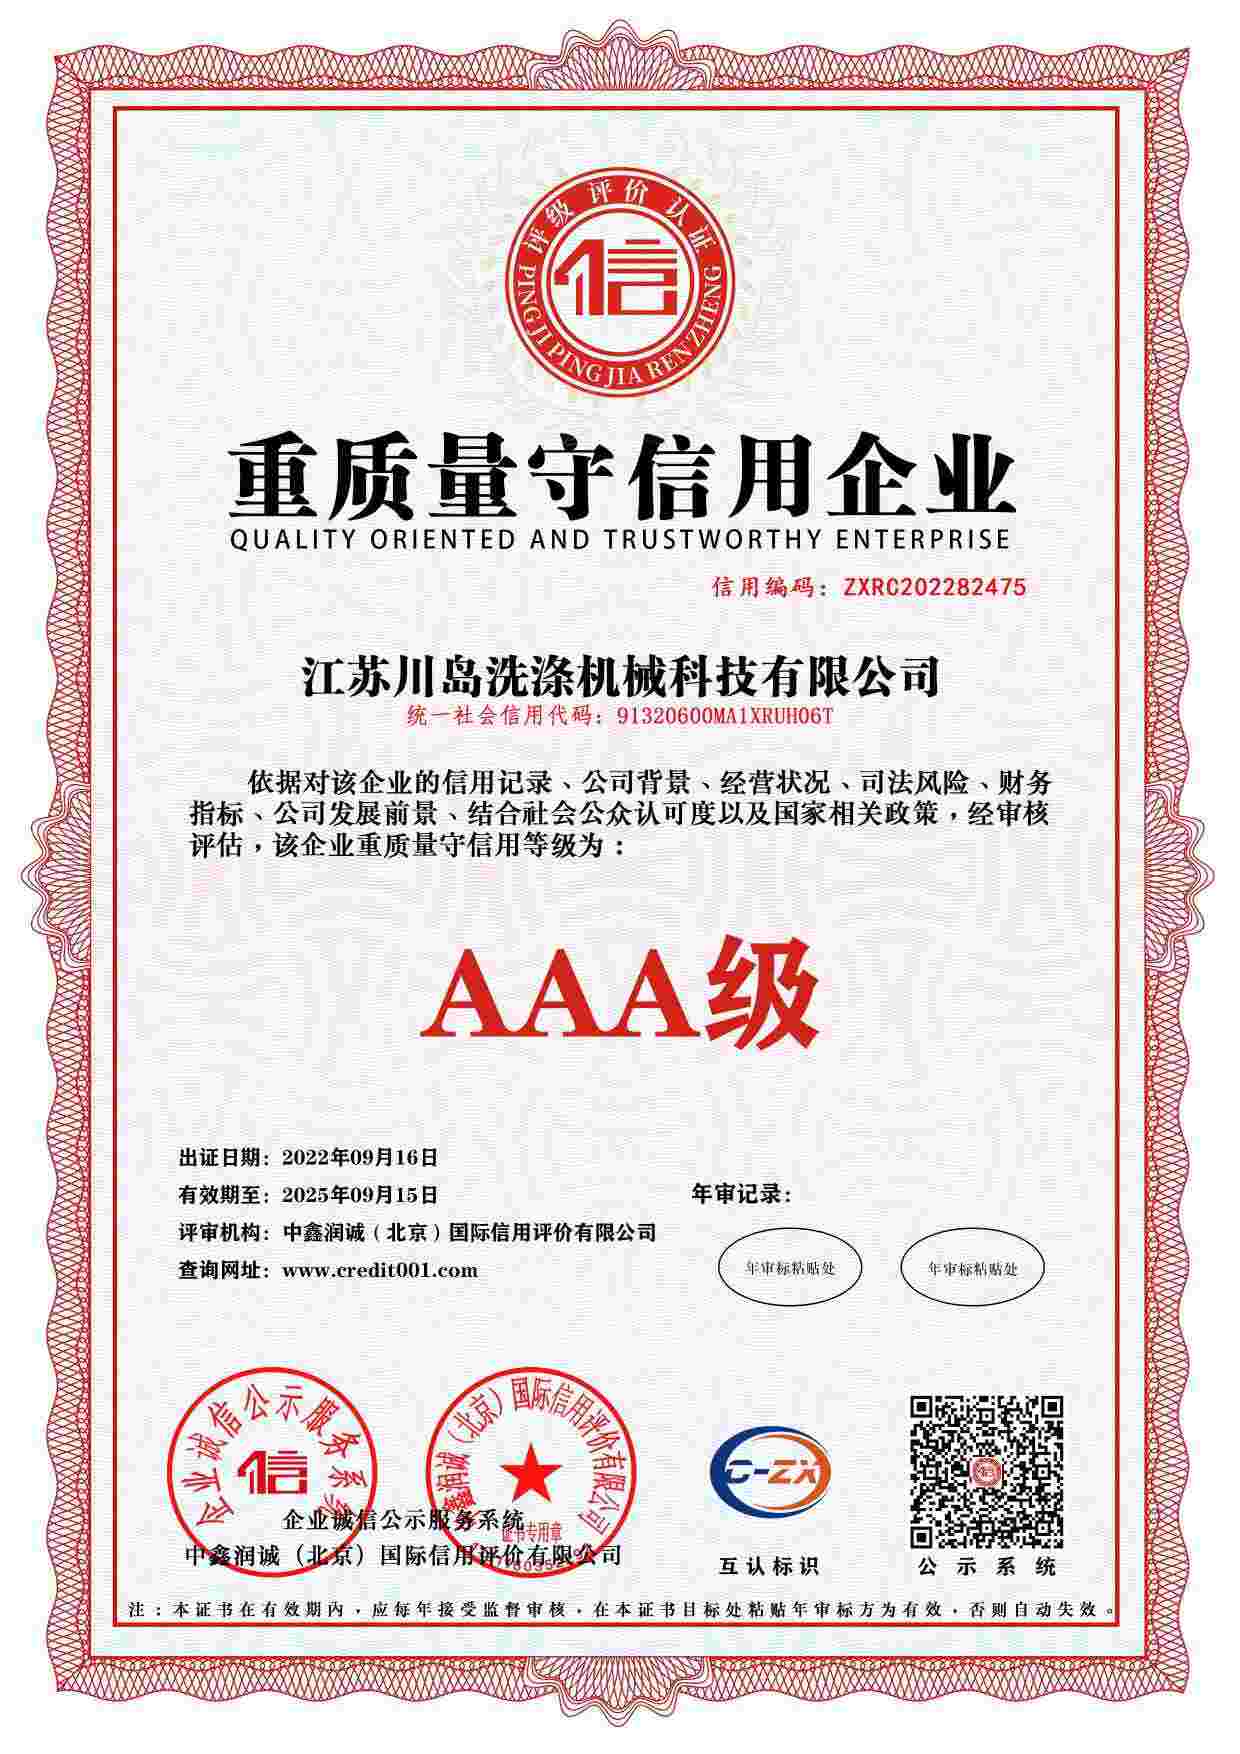 Enterprise credit rating certificate (5)